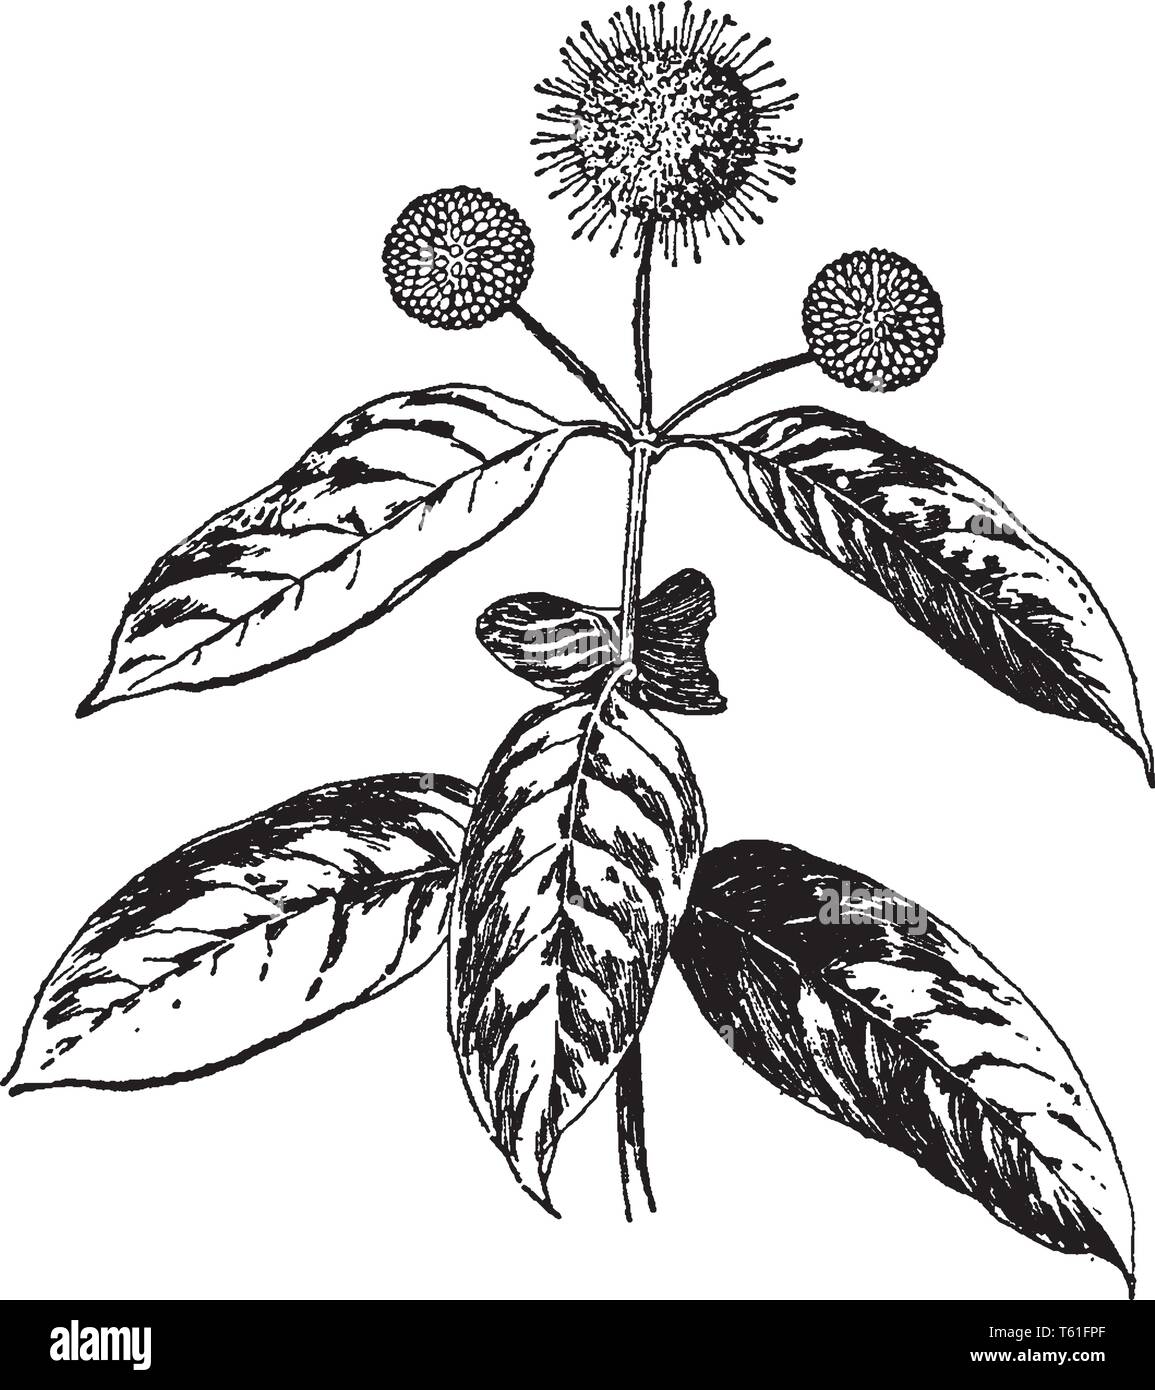 Cephalanthus occidentalis ist holzig Strauch. Die winzigen Blüten sind cremig weiß, vintage Strichzeichnung oder Gravur Abbildung. Stock Vektor